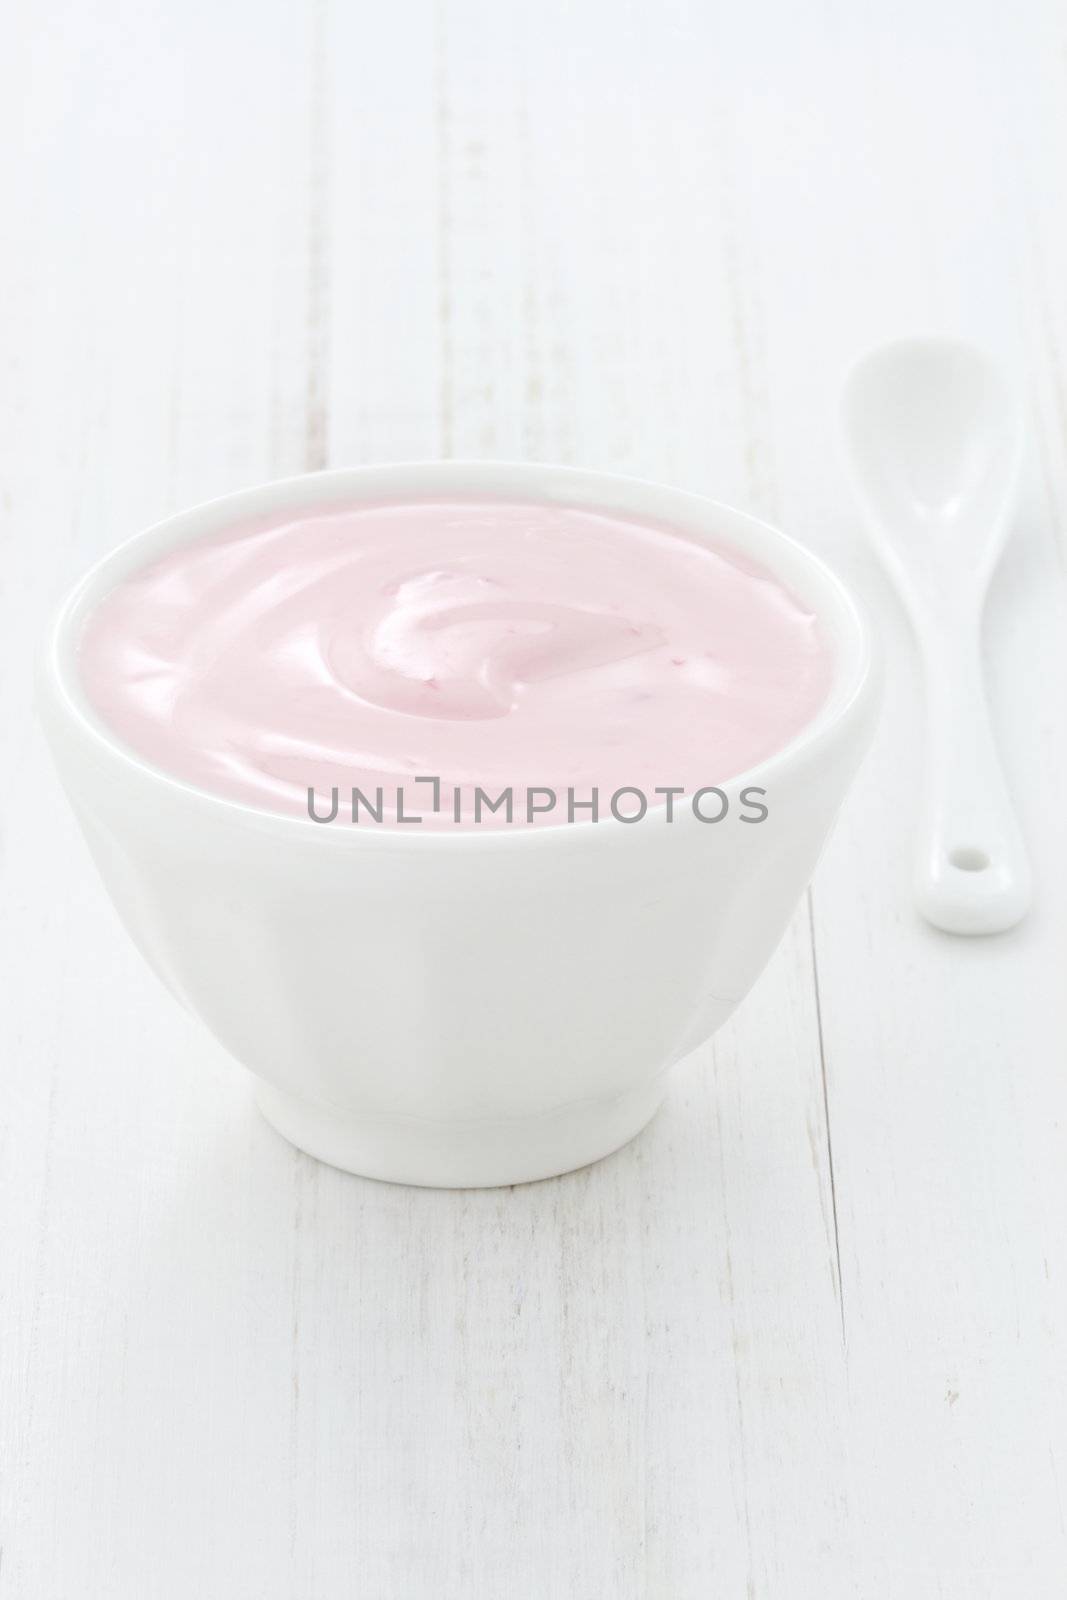 Fresh strawberry yogurt by tacar